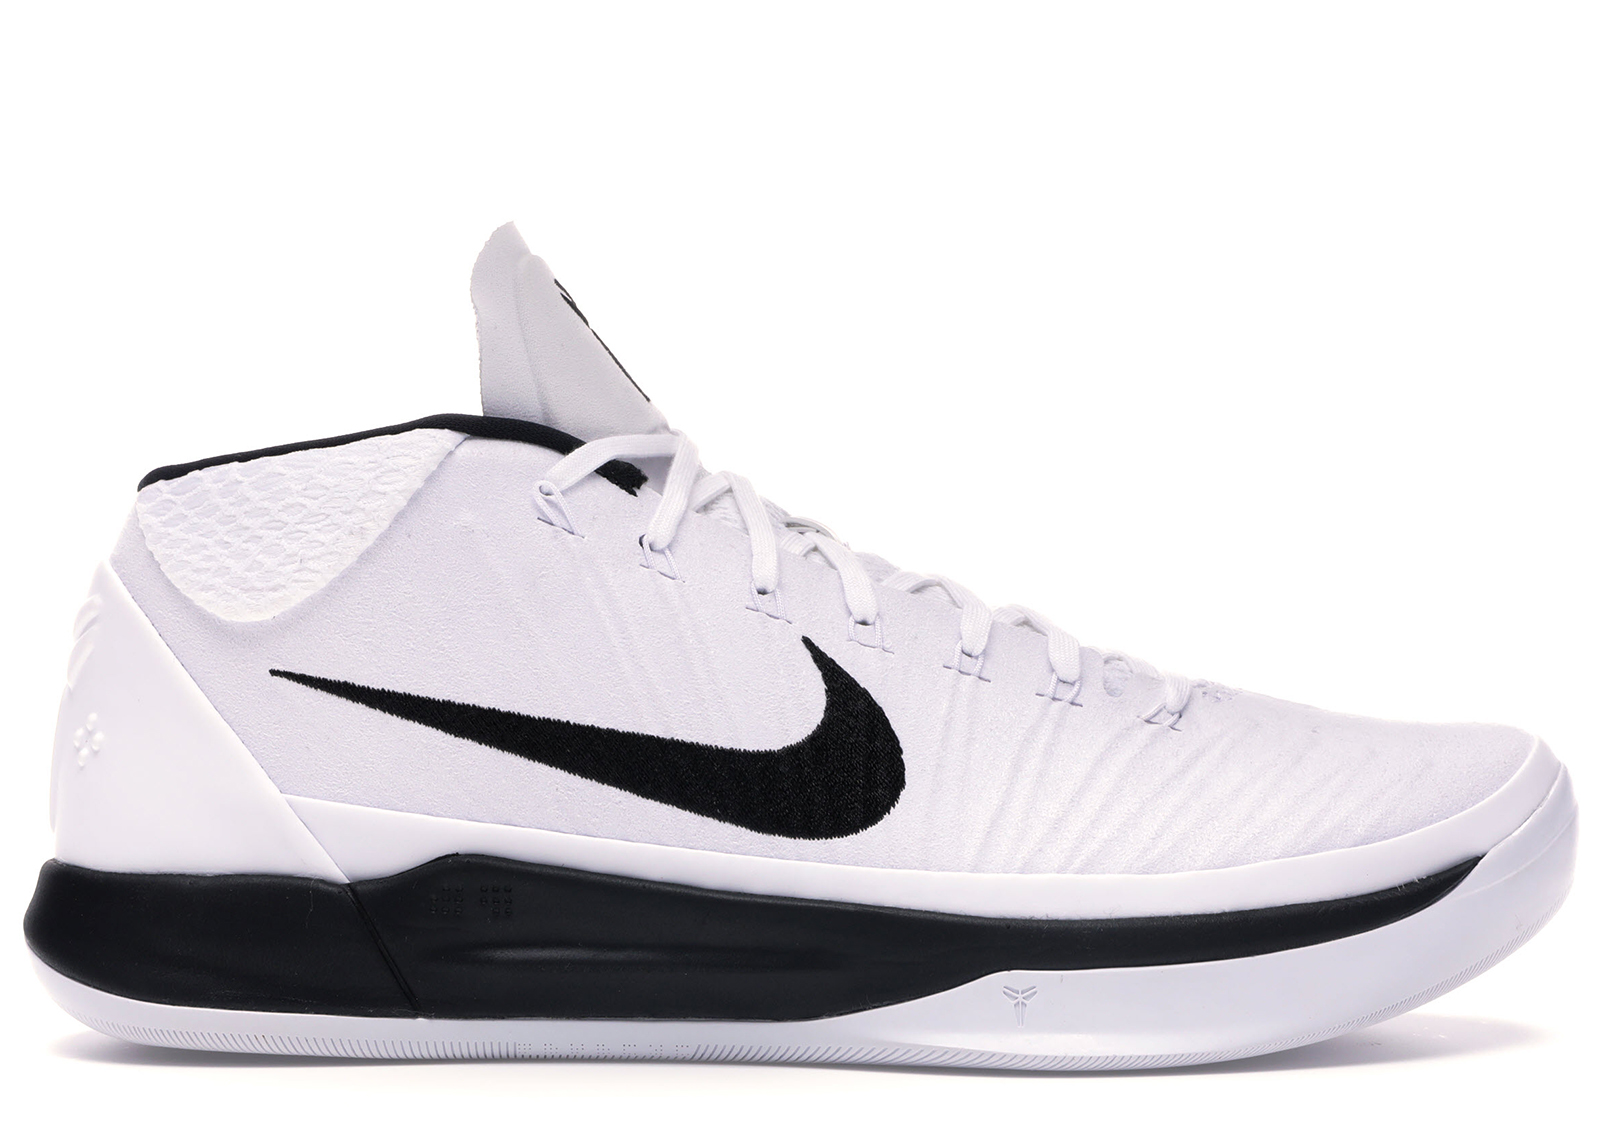 Nike Kobe A.D. TB White Black - 942521-101